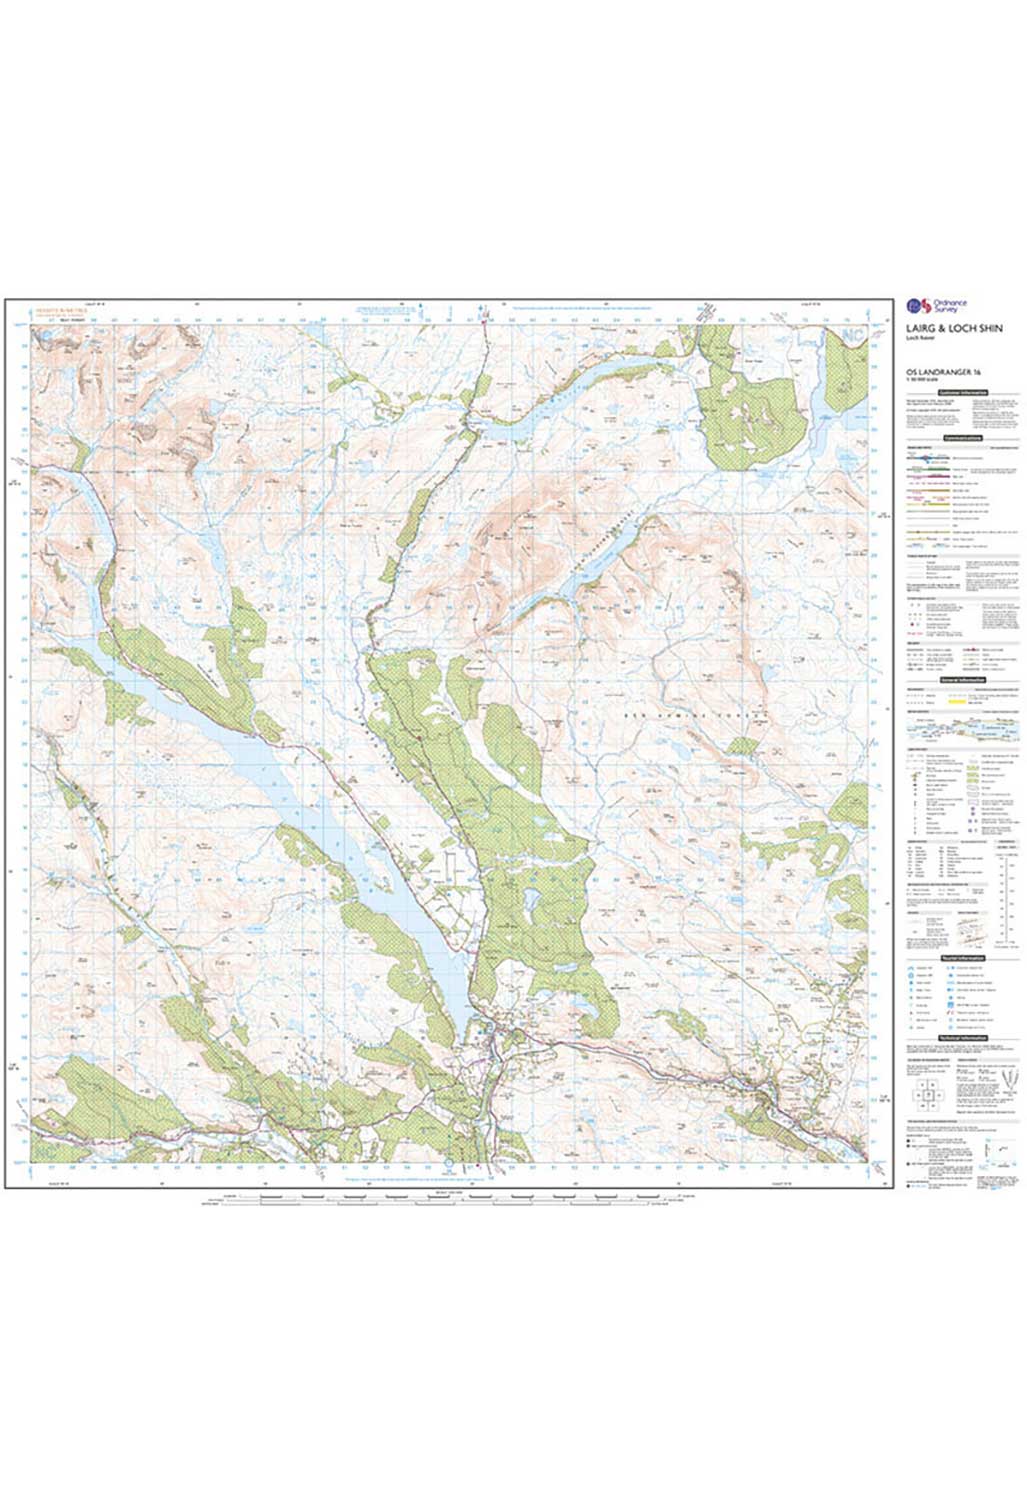 Ordnance Survey Lairg, Loch Shin & Loch Naver - Landranger 16 Map